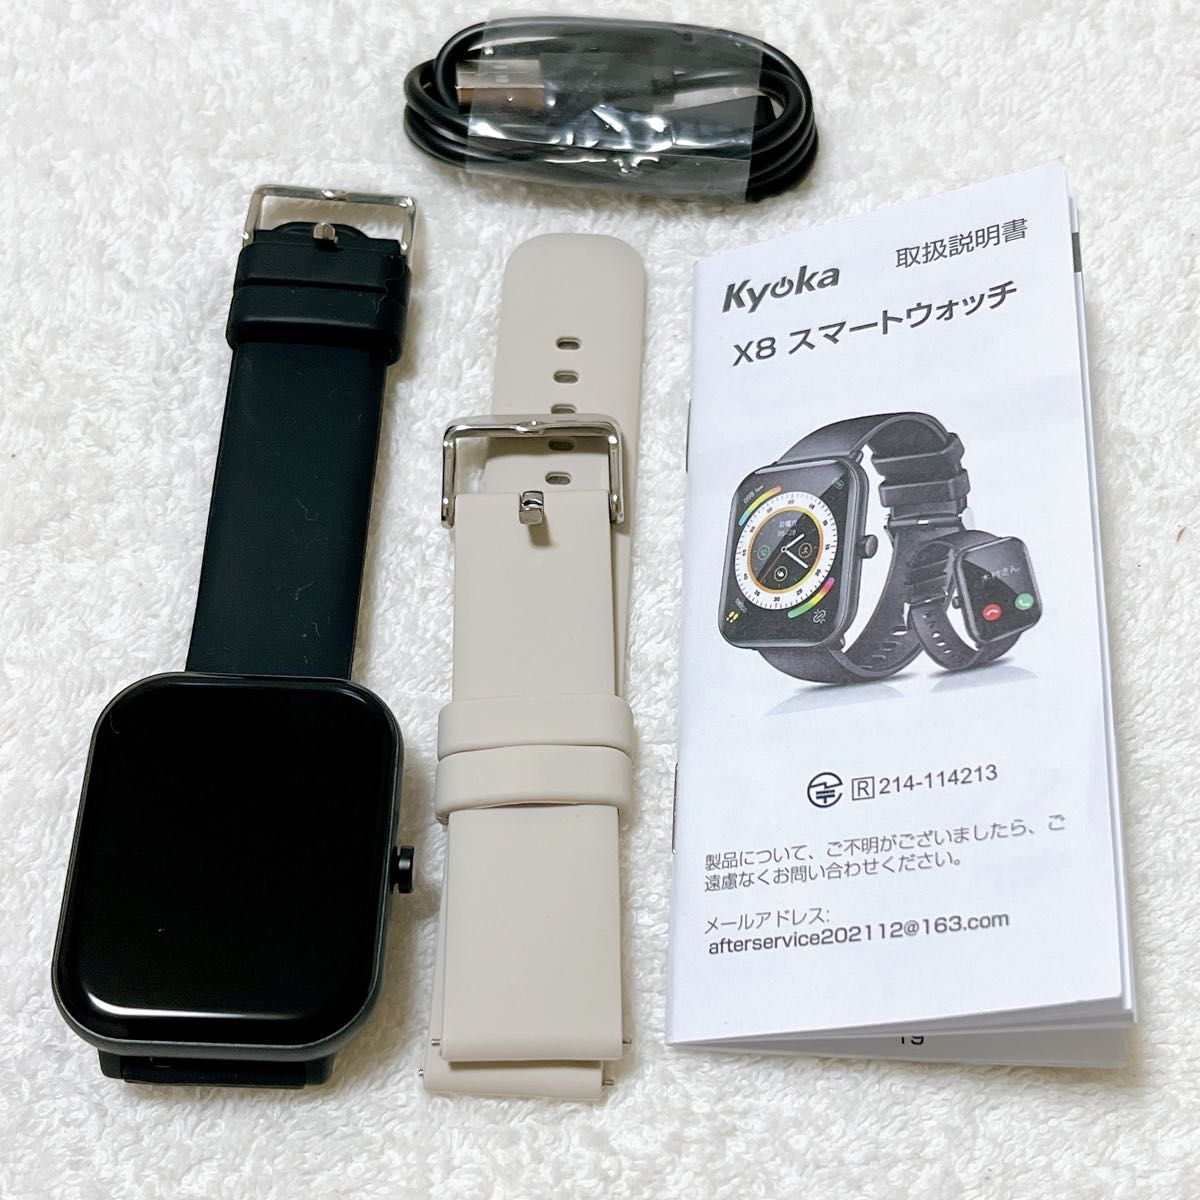 【ジャンク品】スマートウォッチ 通話機能付き 1.95インチ大画面 ブラック 心拍計 防水 多機能 Android IOS